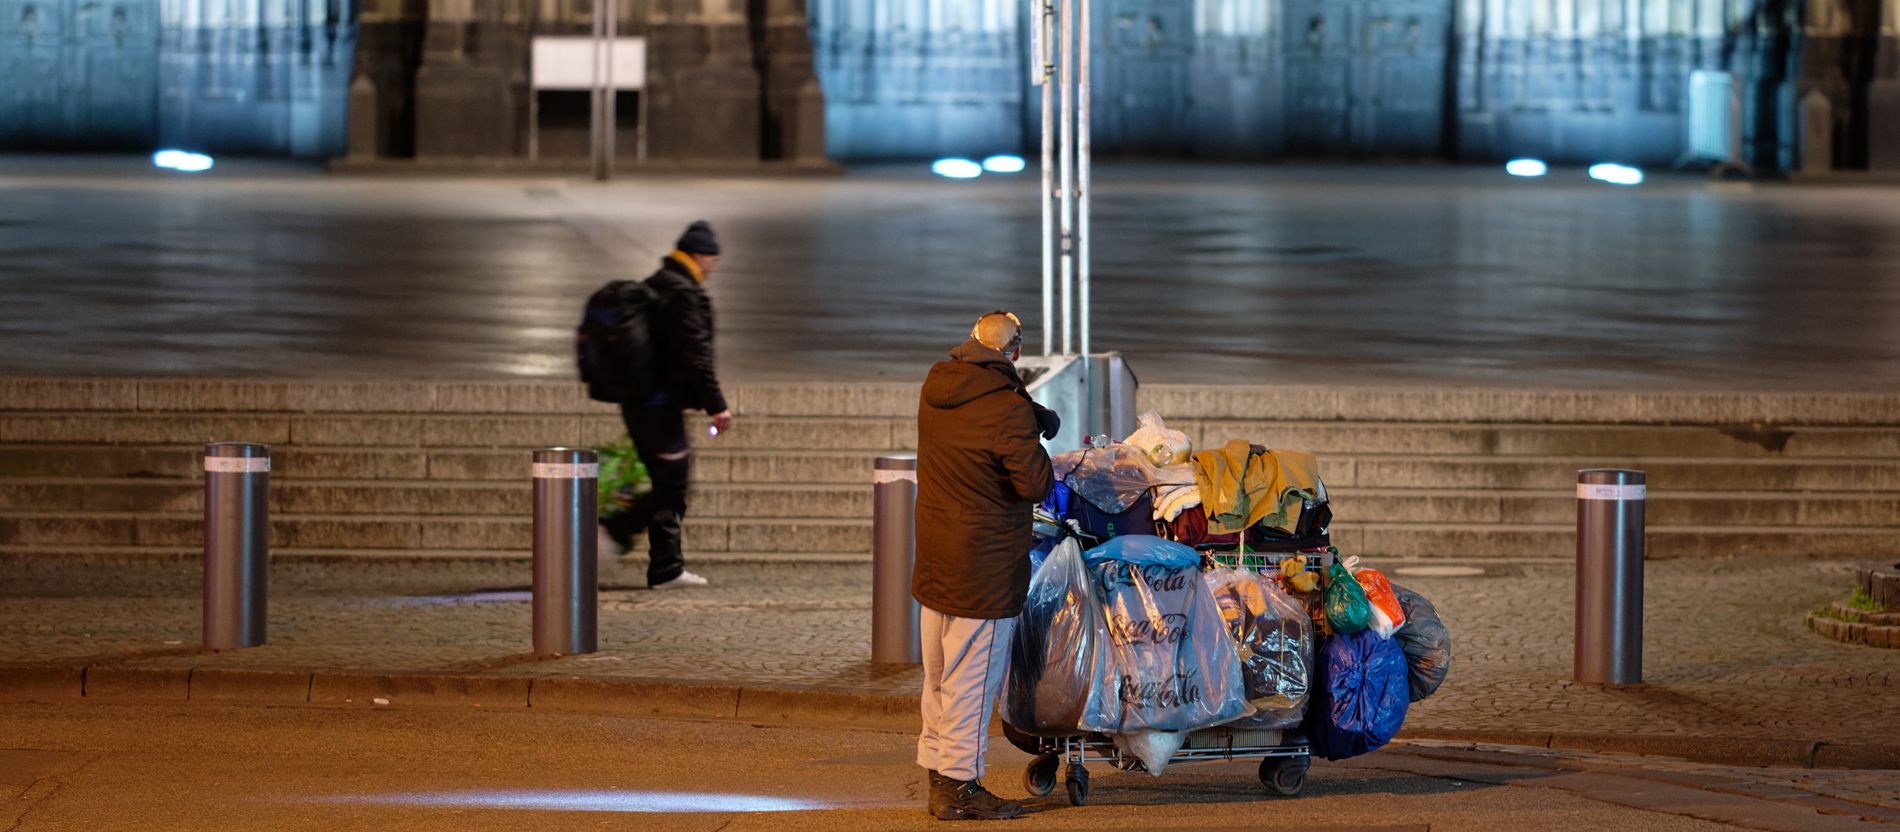 Obdachlosenseelsorge in Köln: "Bei uns ist jeden Tag Sankt Martin"